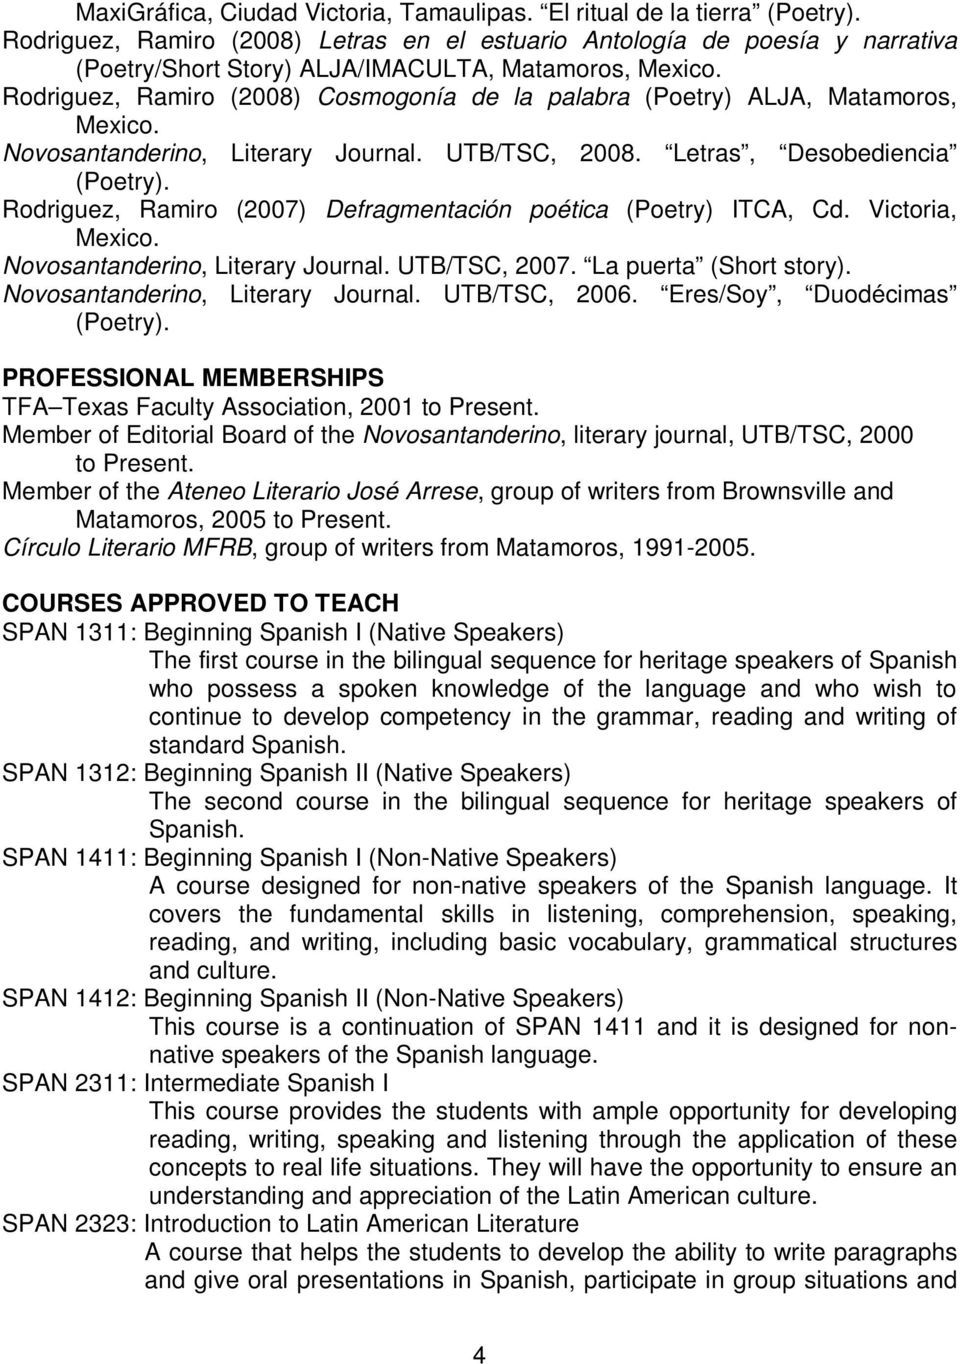 Matamoros, Novosantanderino, Literary Journal. UTB/TSC, 2008. Letras, Desobediencia (Poetry). Rodriguez, Ramiro (2007) Defragmentación poética (Poetry) ITCA, Cd.